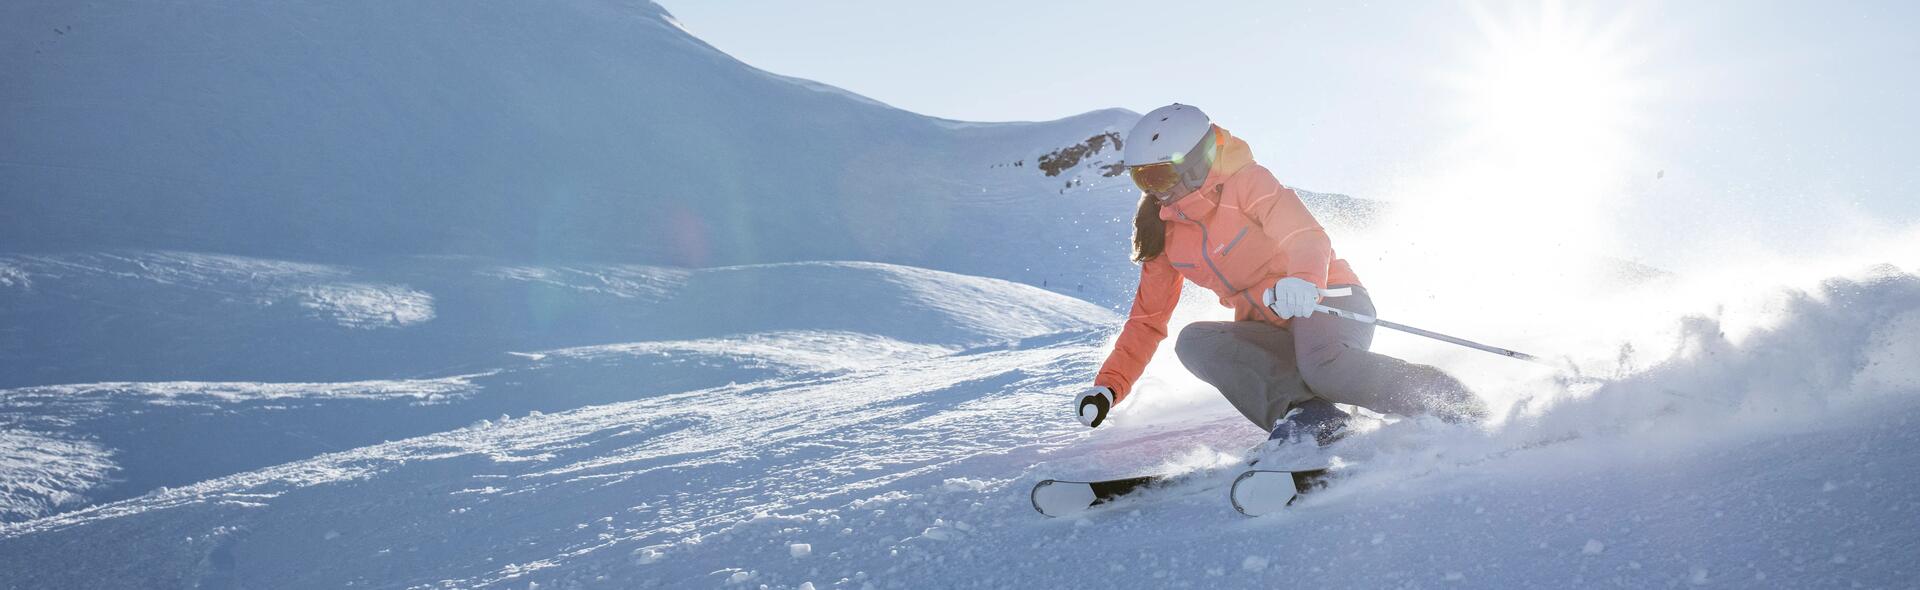 Retour au ski : 5 conseils avant votre première descente